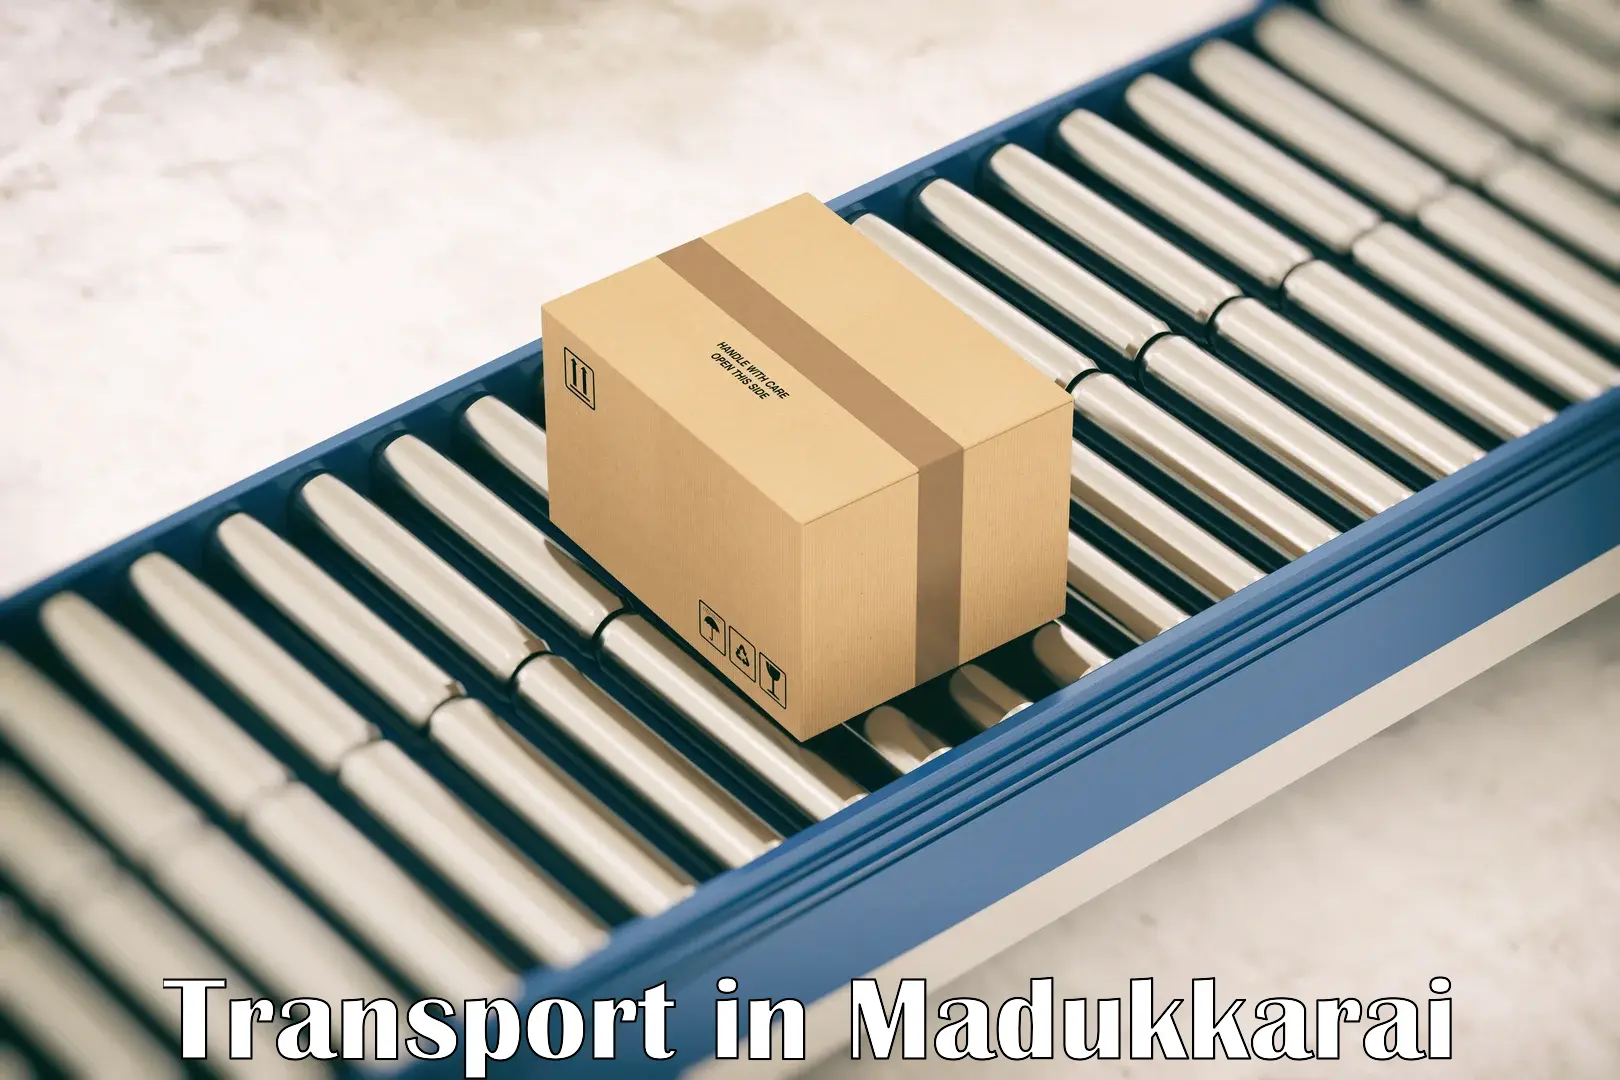 Vehicle transport services in Madukkarai